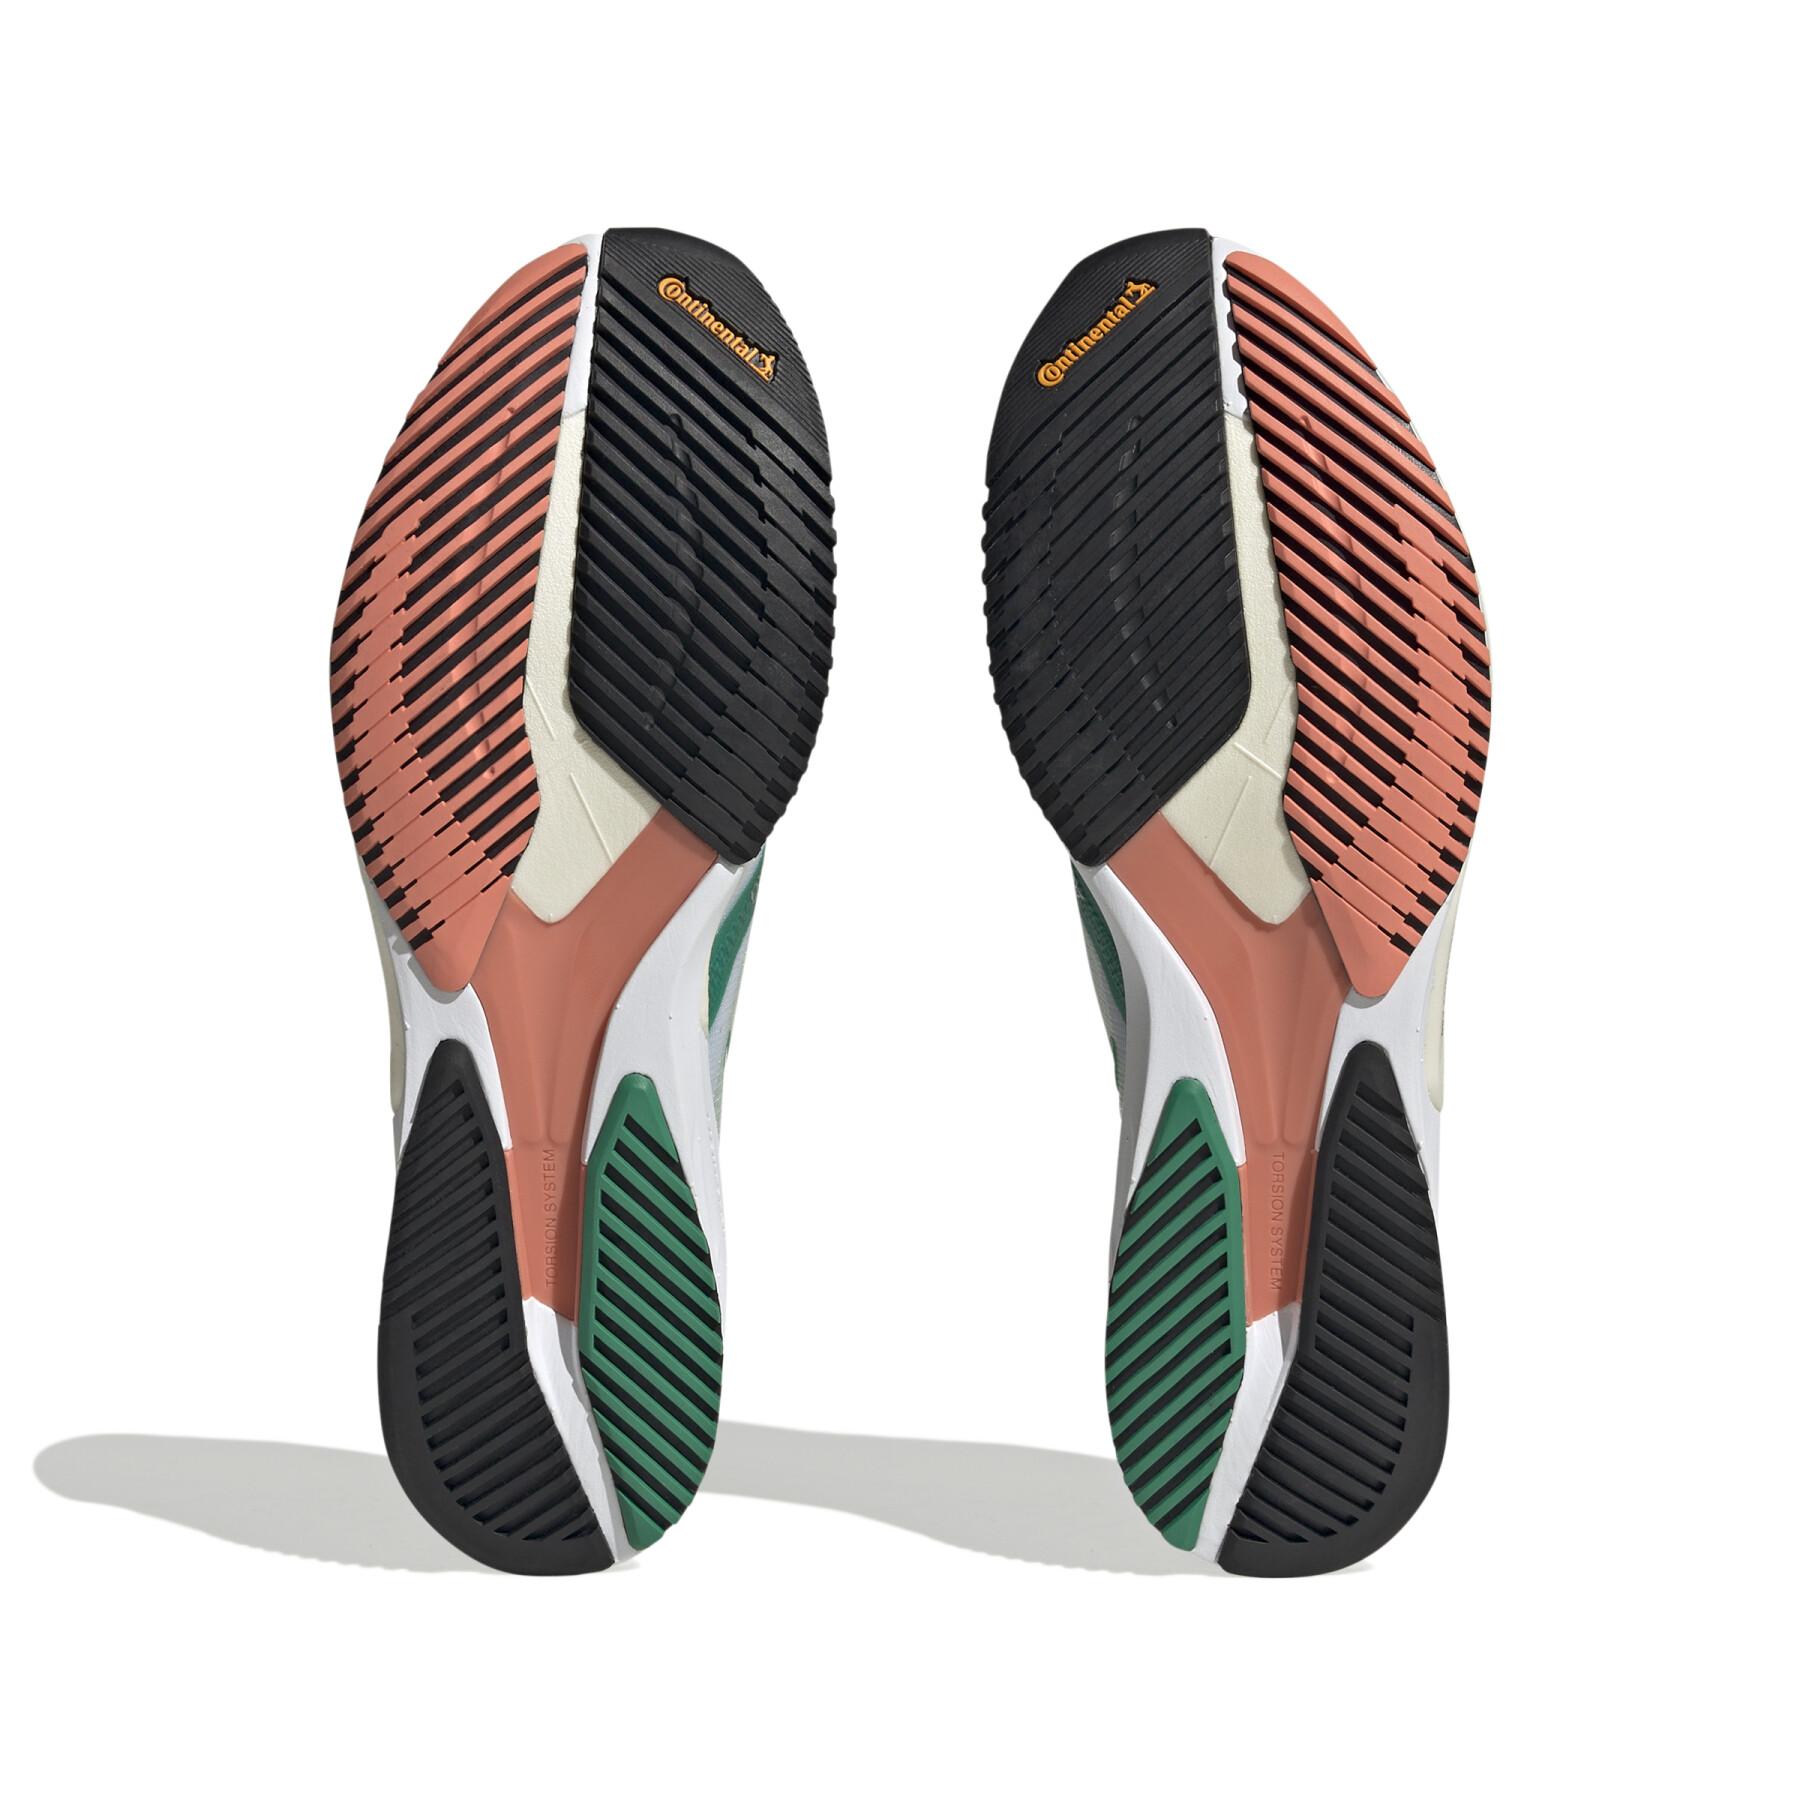 Shoe from running adidas Adizero Adios 7